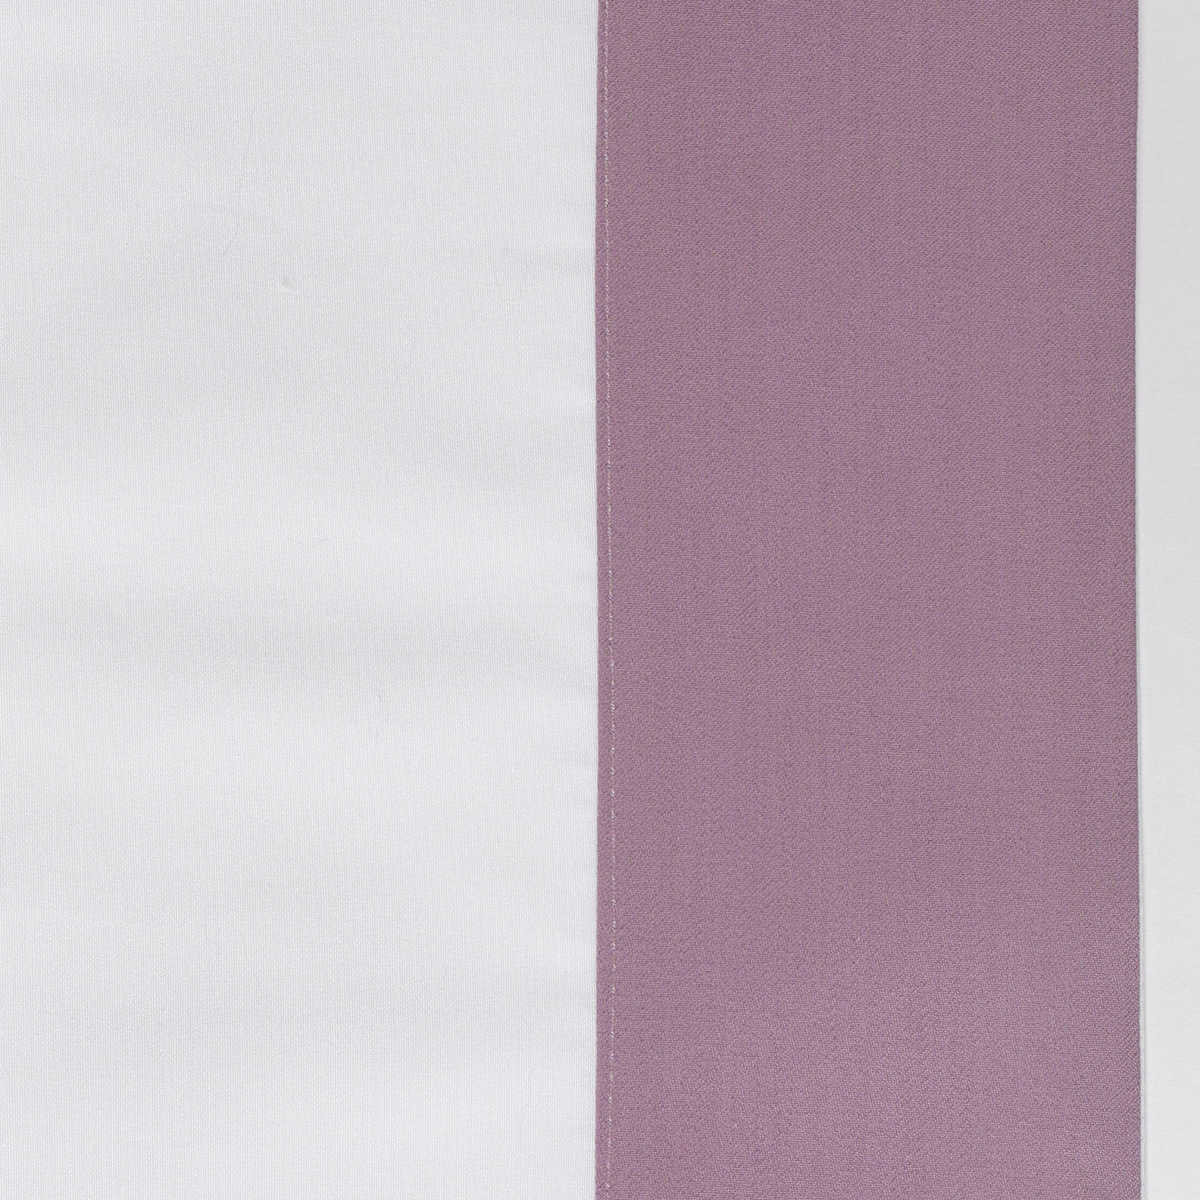 Swatch Sample of Celso de Lemos Hella Bedding in Raisin Color